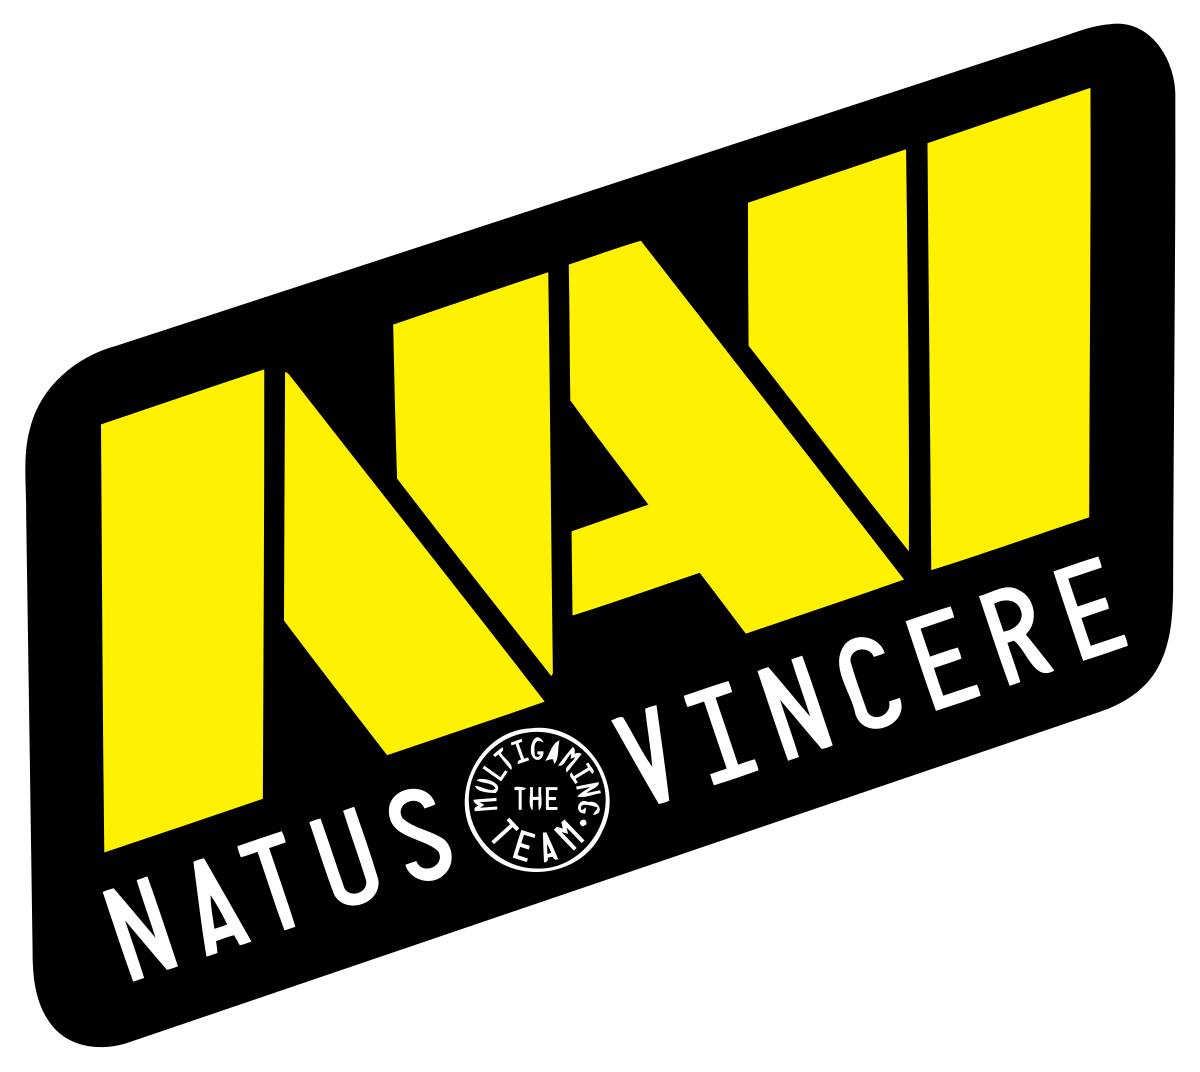 Fng рассказал о кике из Natus Vincere в 2014 году